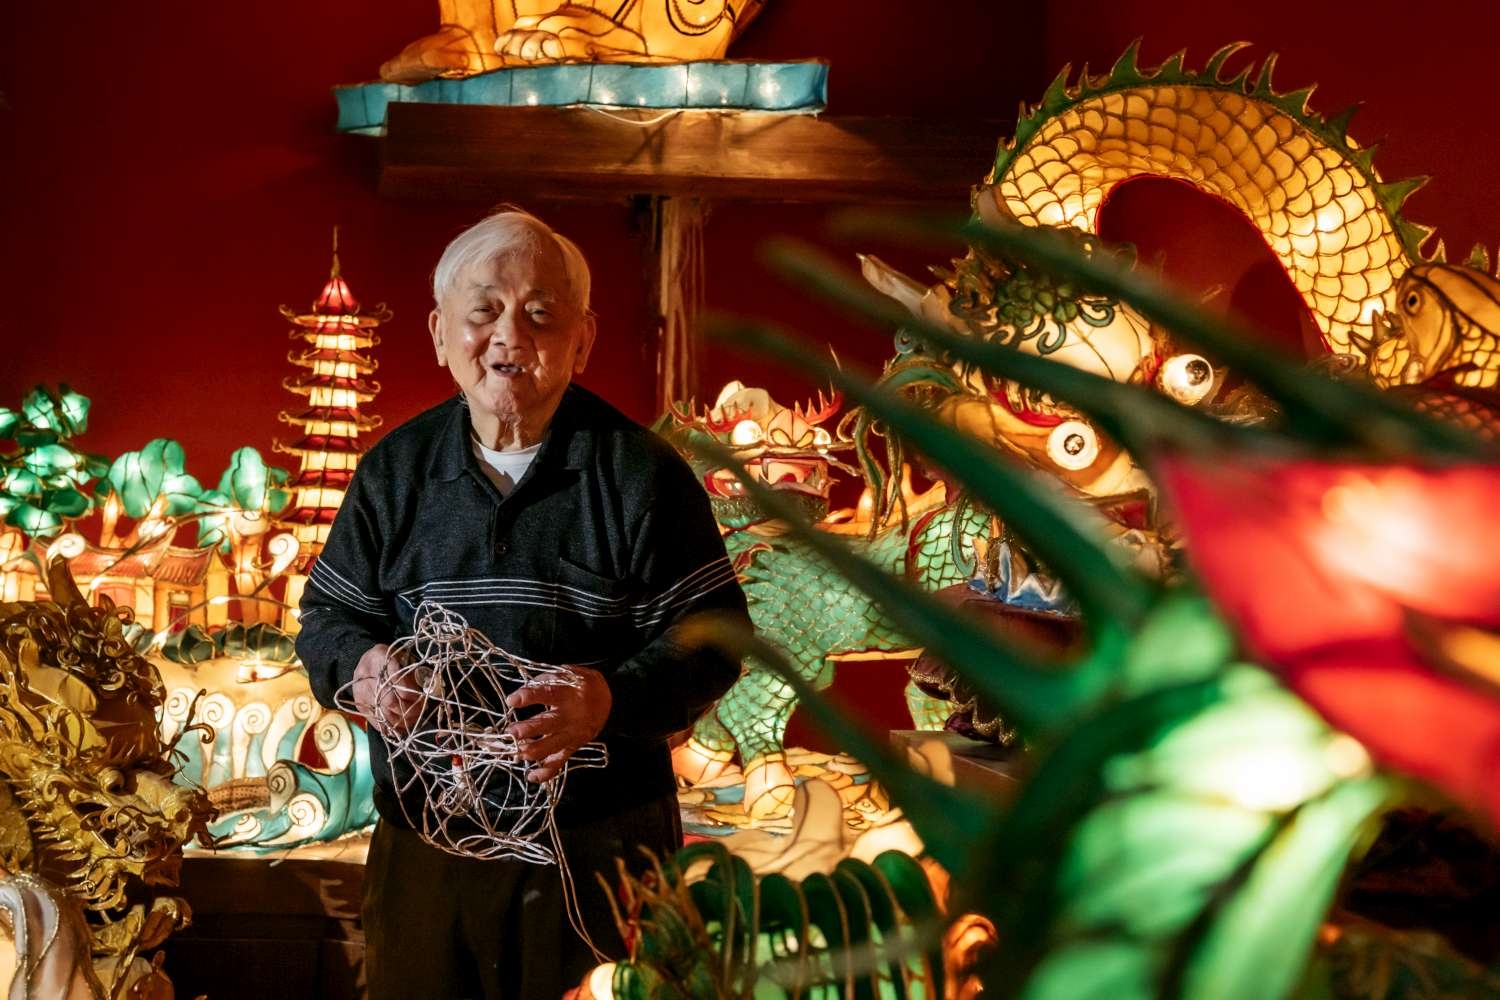 2.國寶燈藝師蕭在淦堅持用雙手造型鐵絲骨架花燈，至今創作不輟。|